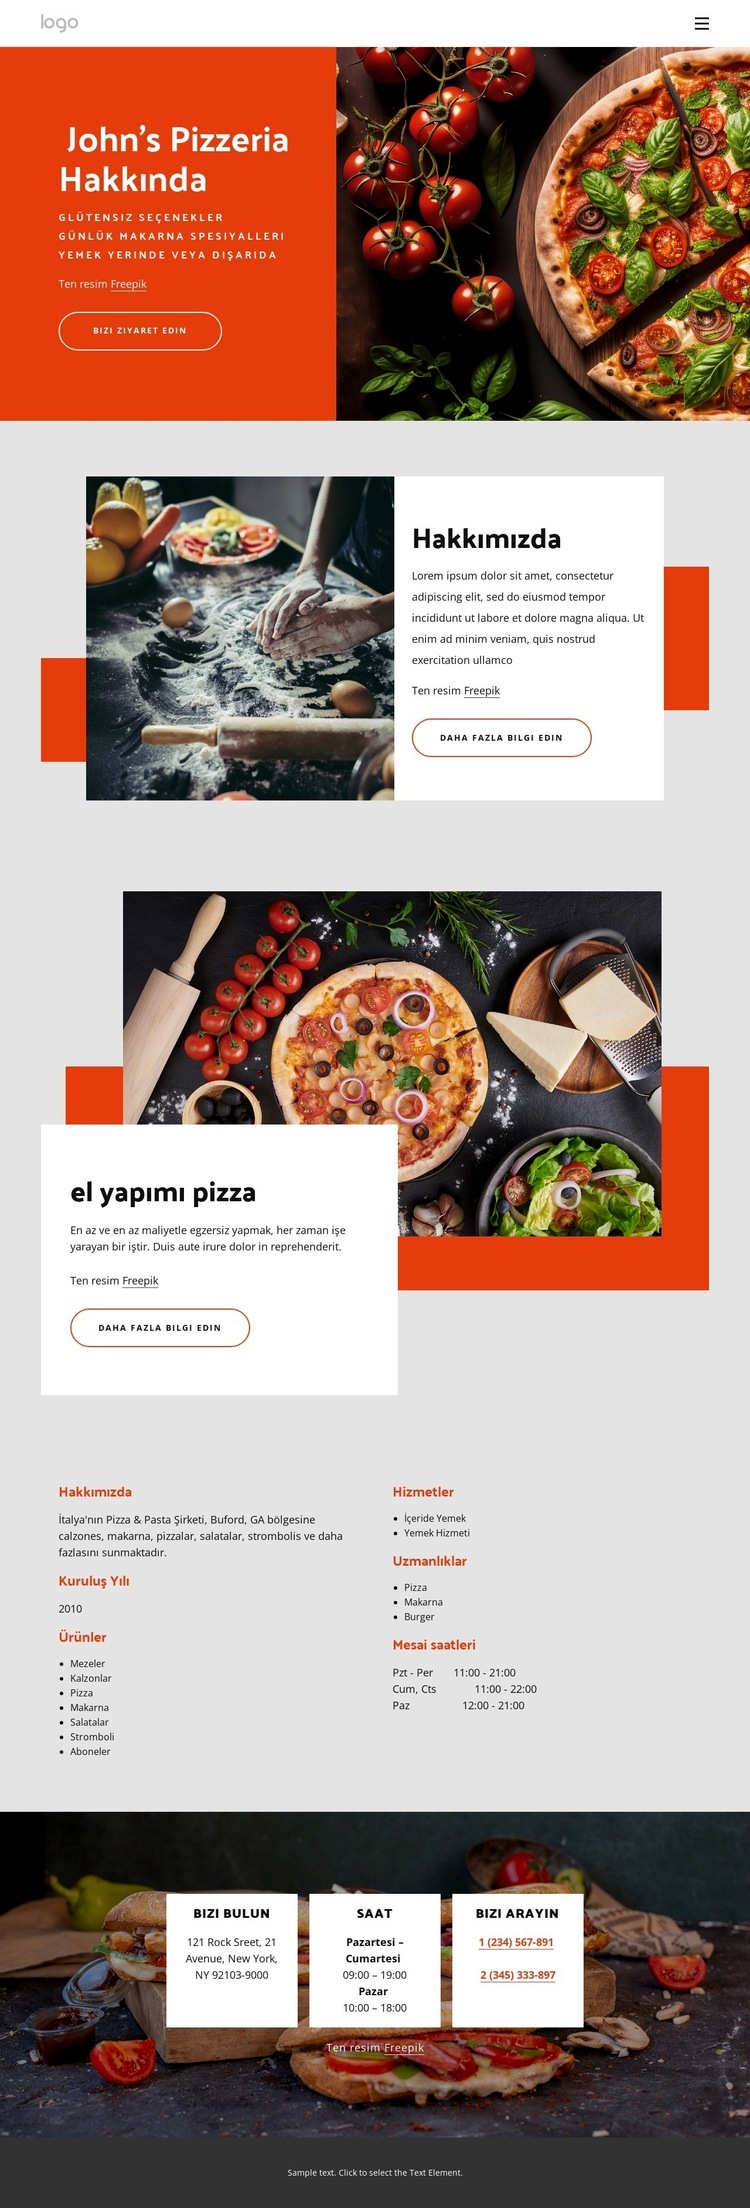 pizzacımız hakkında Web sitesi tasarımı